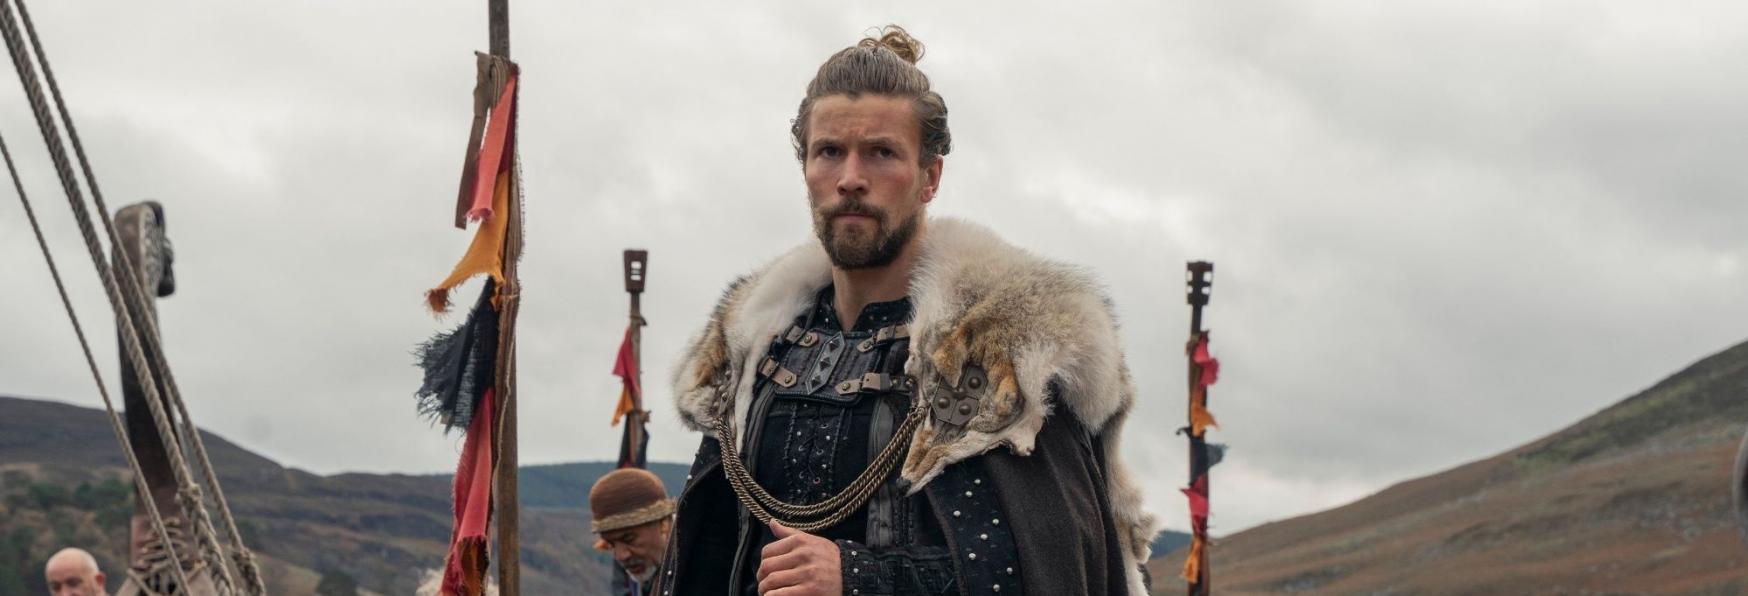 Vikings: Valhalla - Netflix ha ordinato altre Due stagioni della Serie TV Spin-off